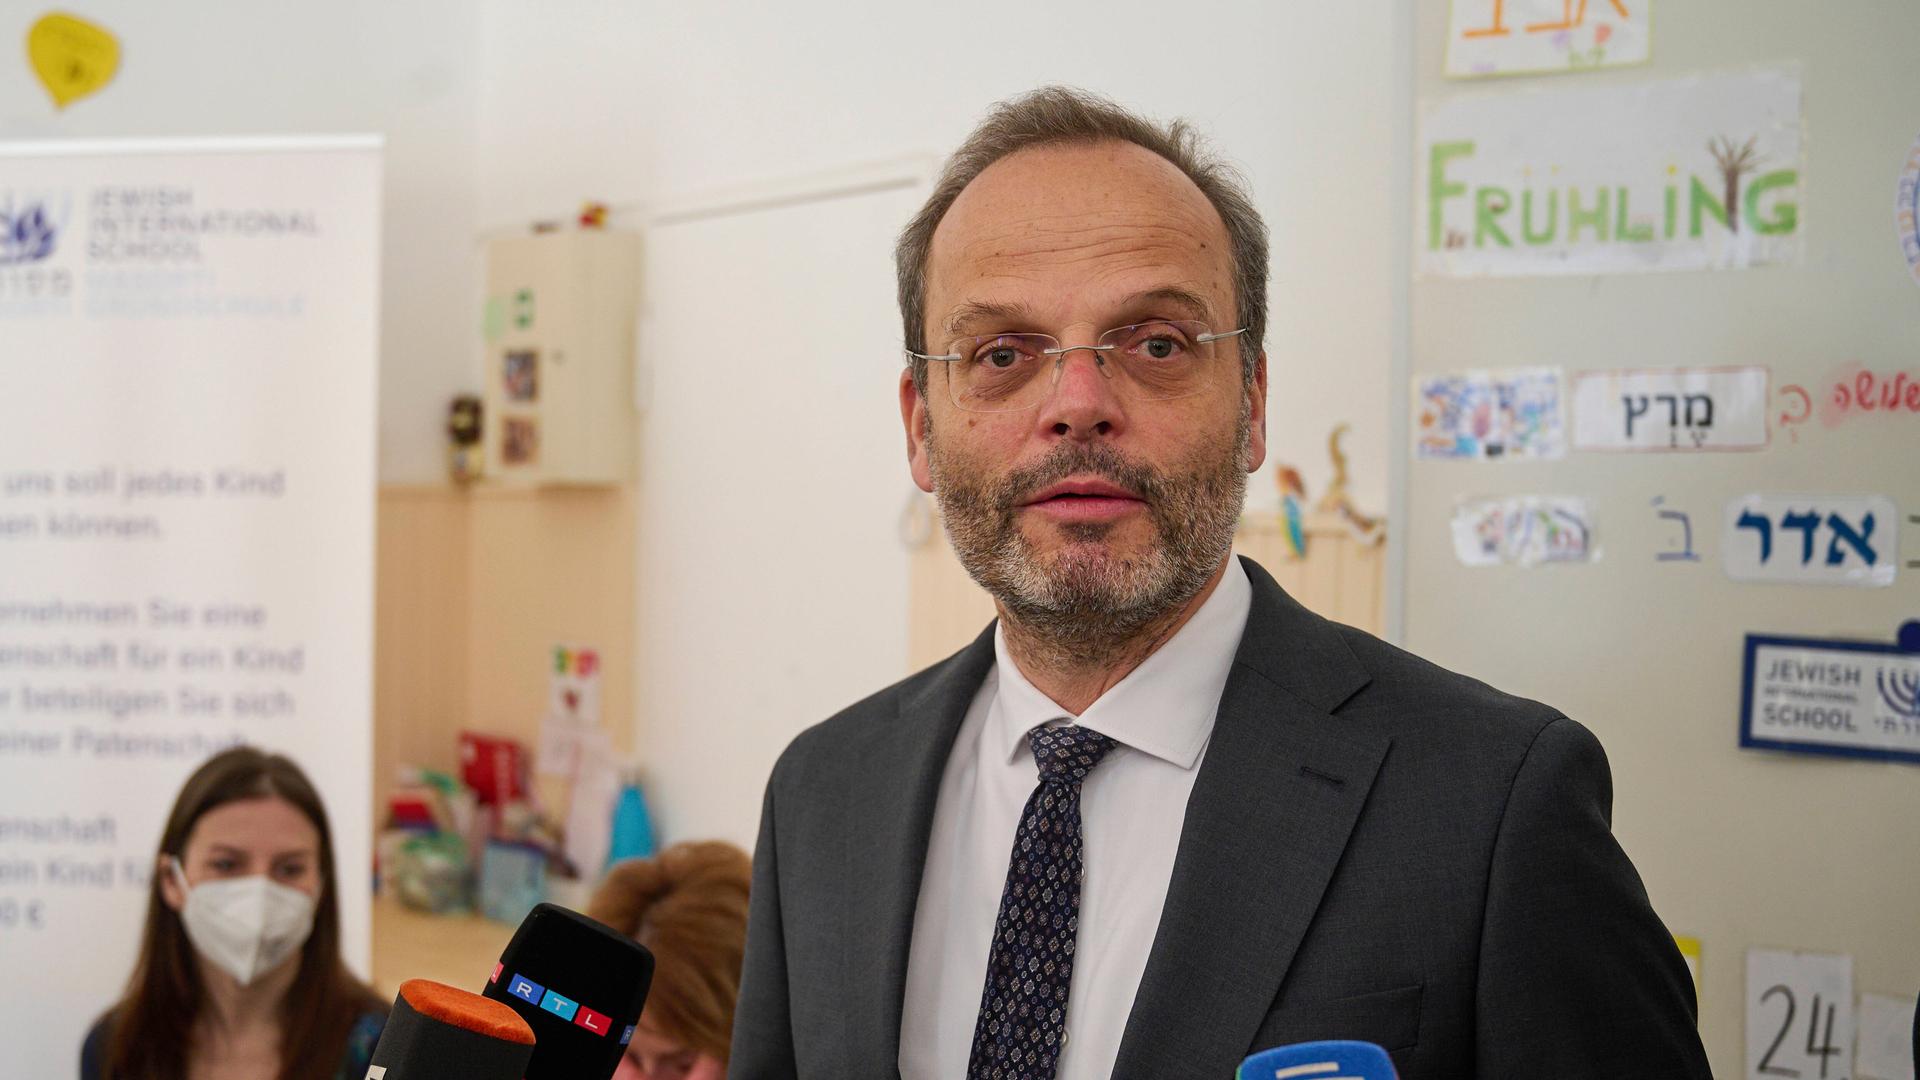 Der Antisemitismusbeauftrage der Bundesregierung, Felix Klein, besucht ukrainische Schülerinnen und Schüler der Willkommensklasse der Jewish International School - Masorti Grundschule in Berlin.